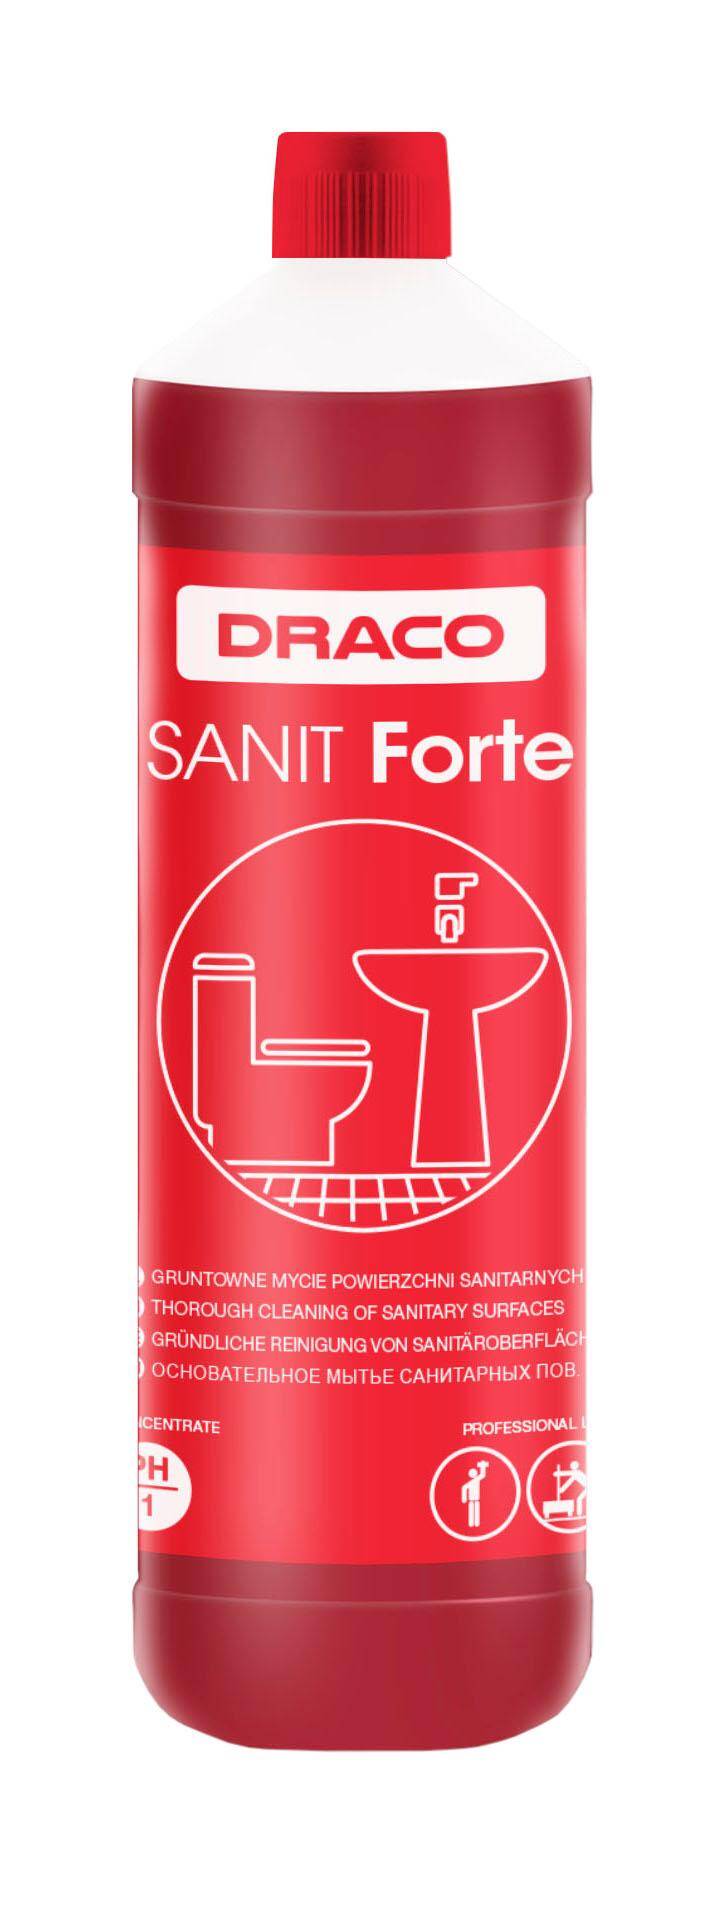 DRACO - Sanit Forte 1L